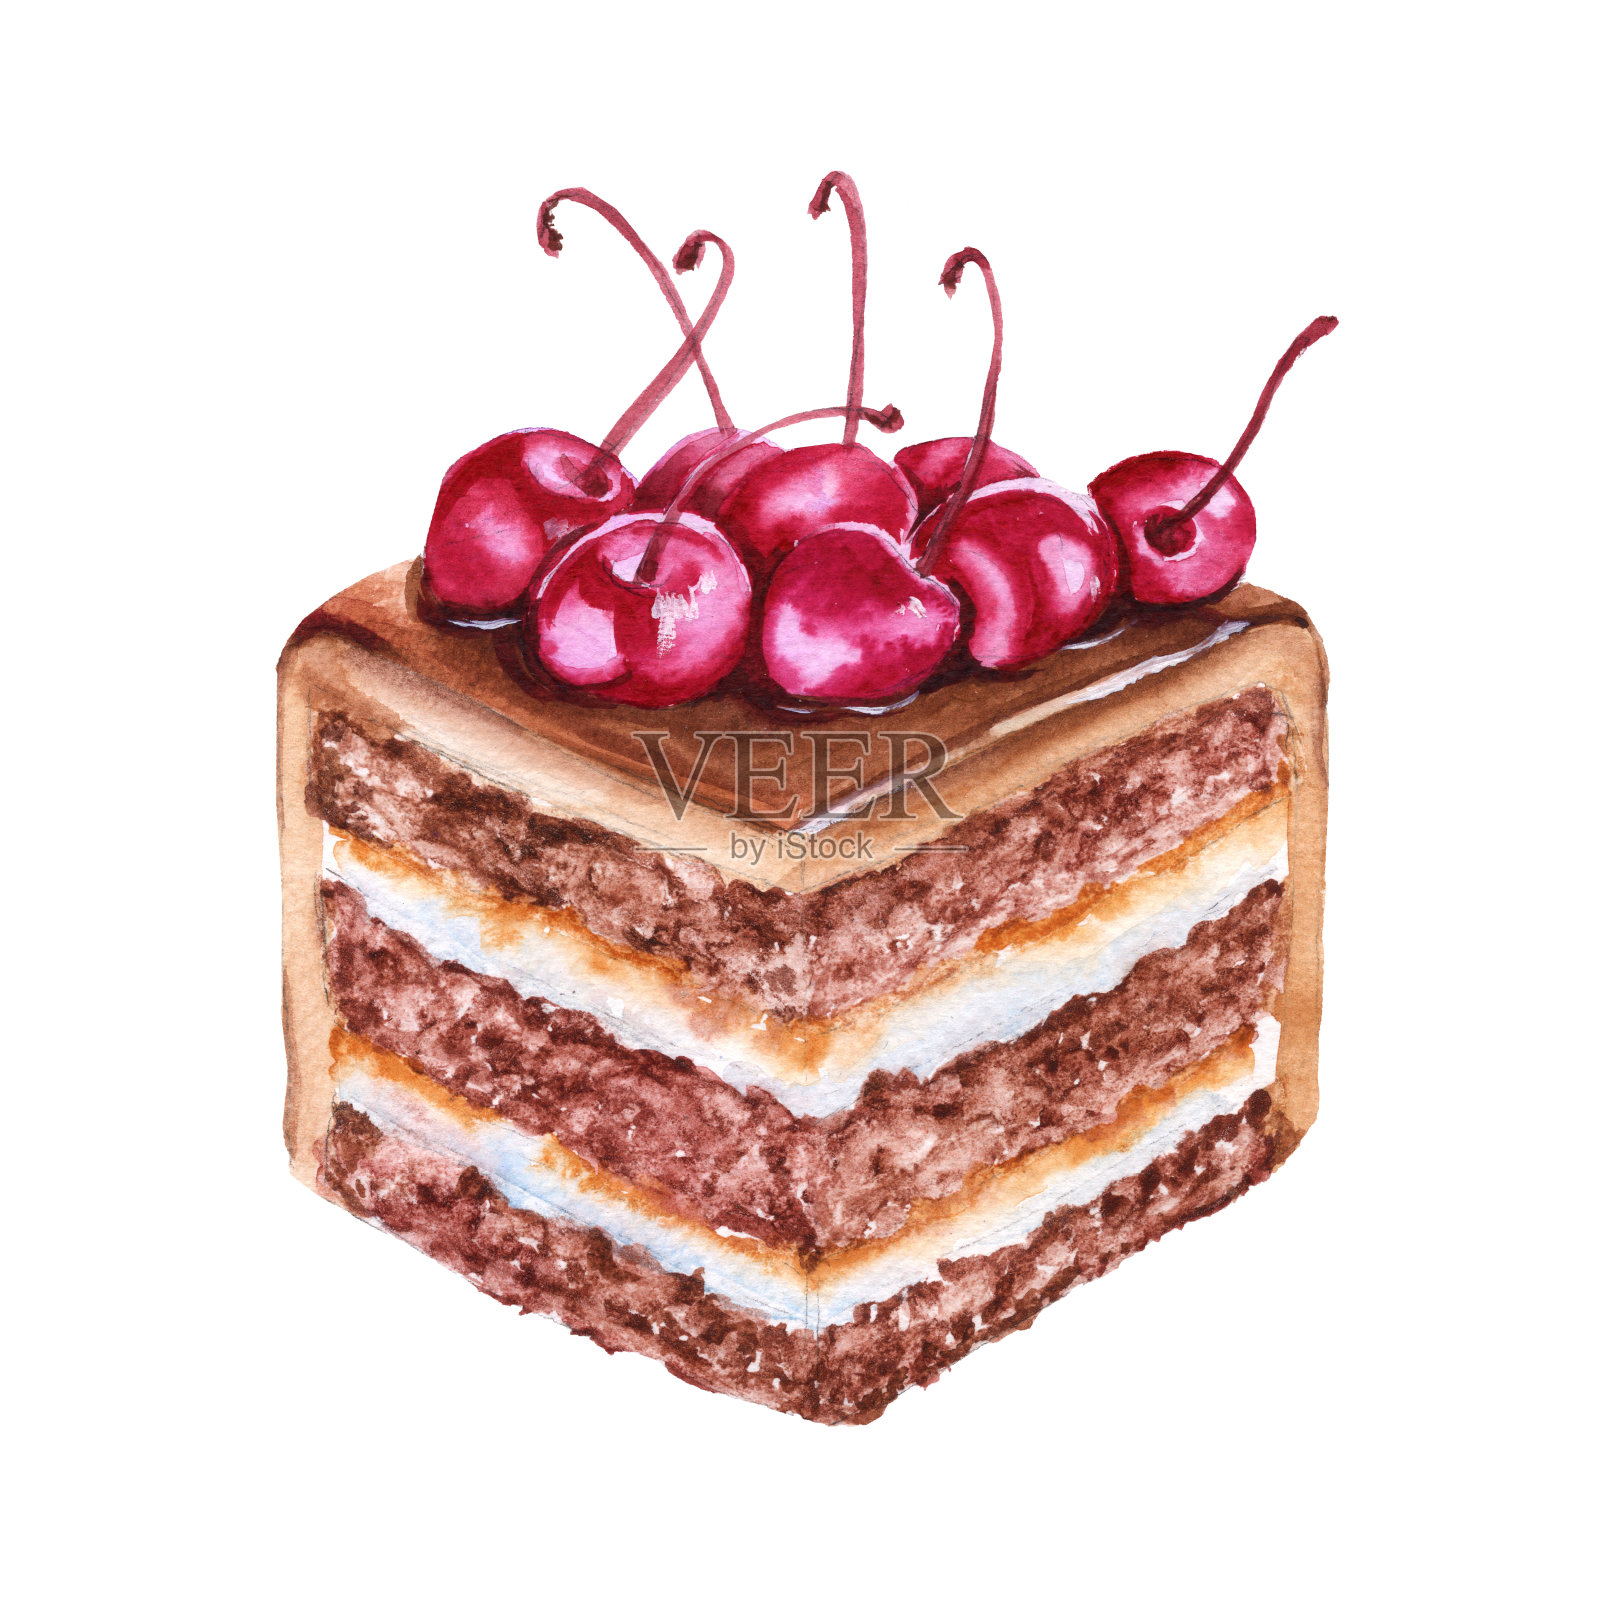 一块樱桃巧克力蛋糕。孤立在白色背景上。插画图片素材